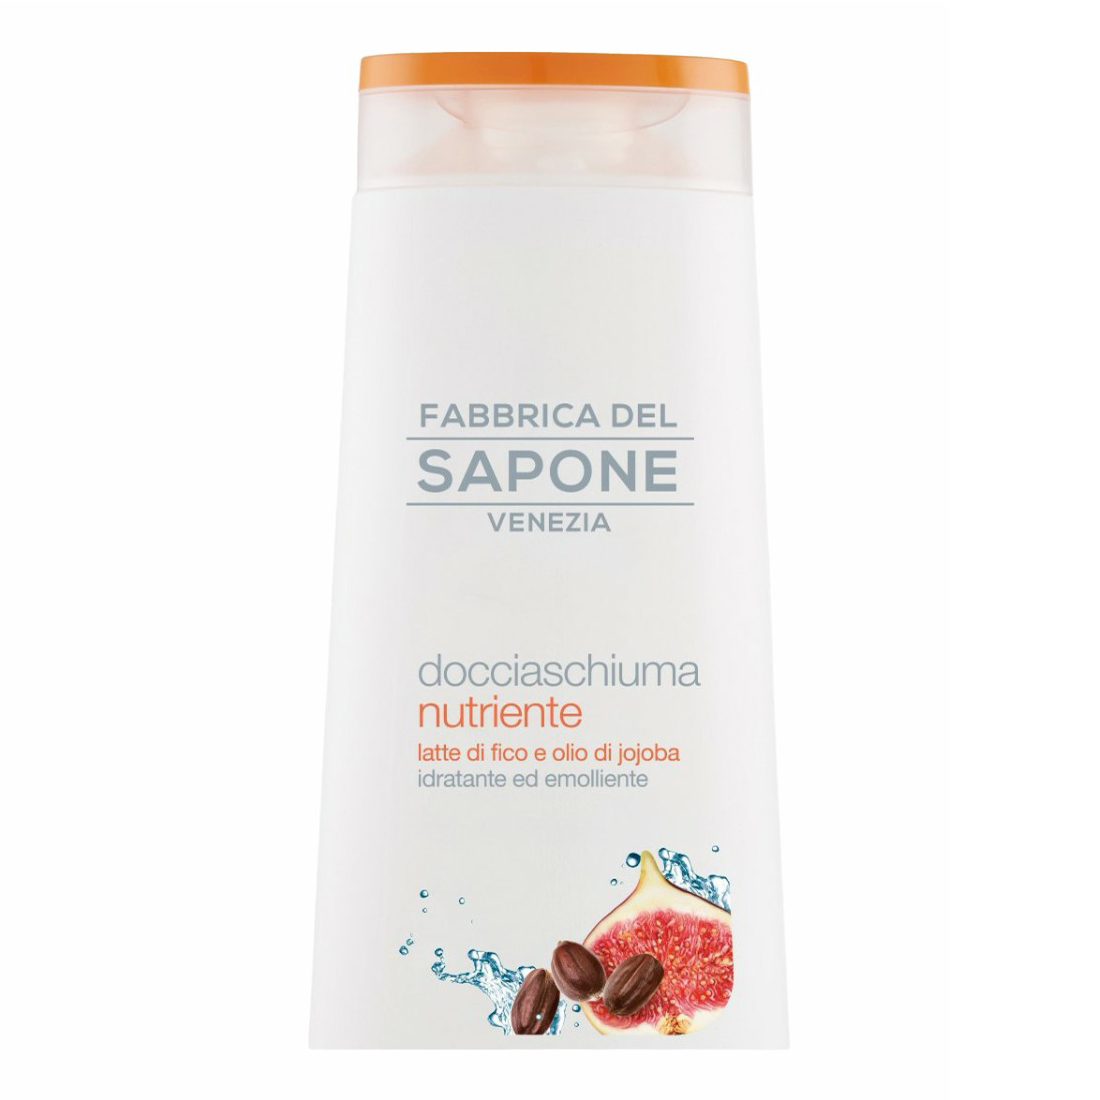 Гель для душа Fabbrica del sapone c инжирным молоком и маслом жожоба питание кожи 250 мл